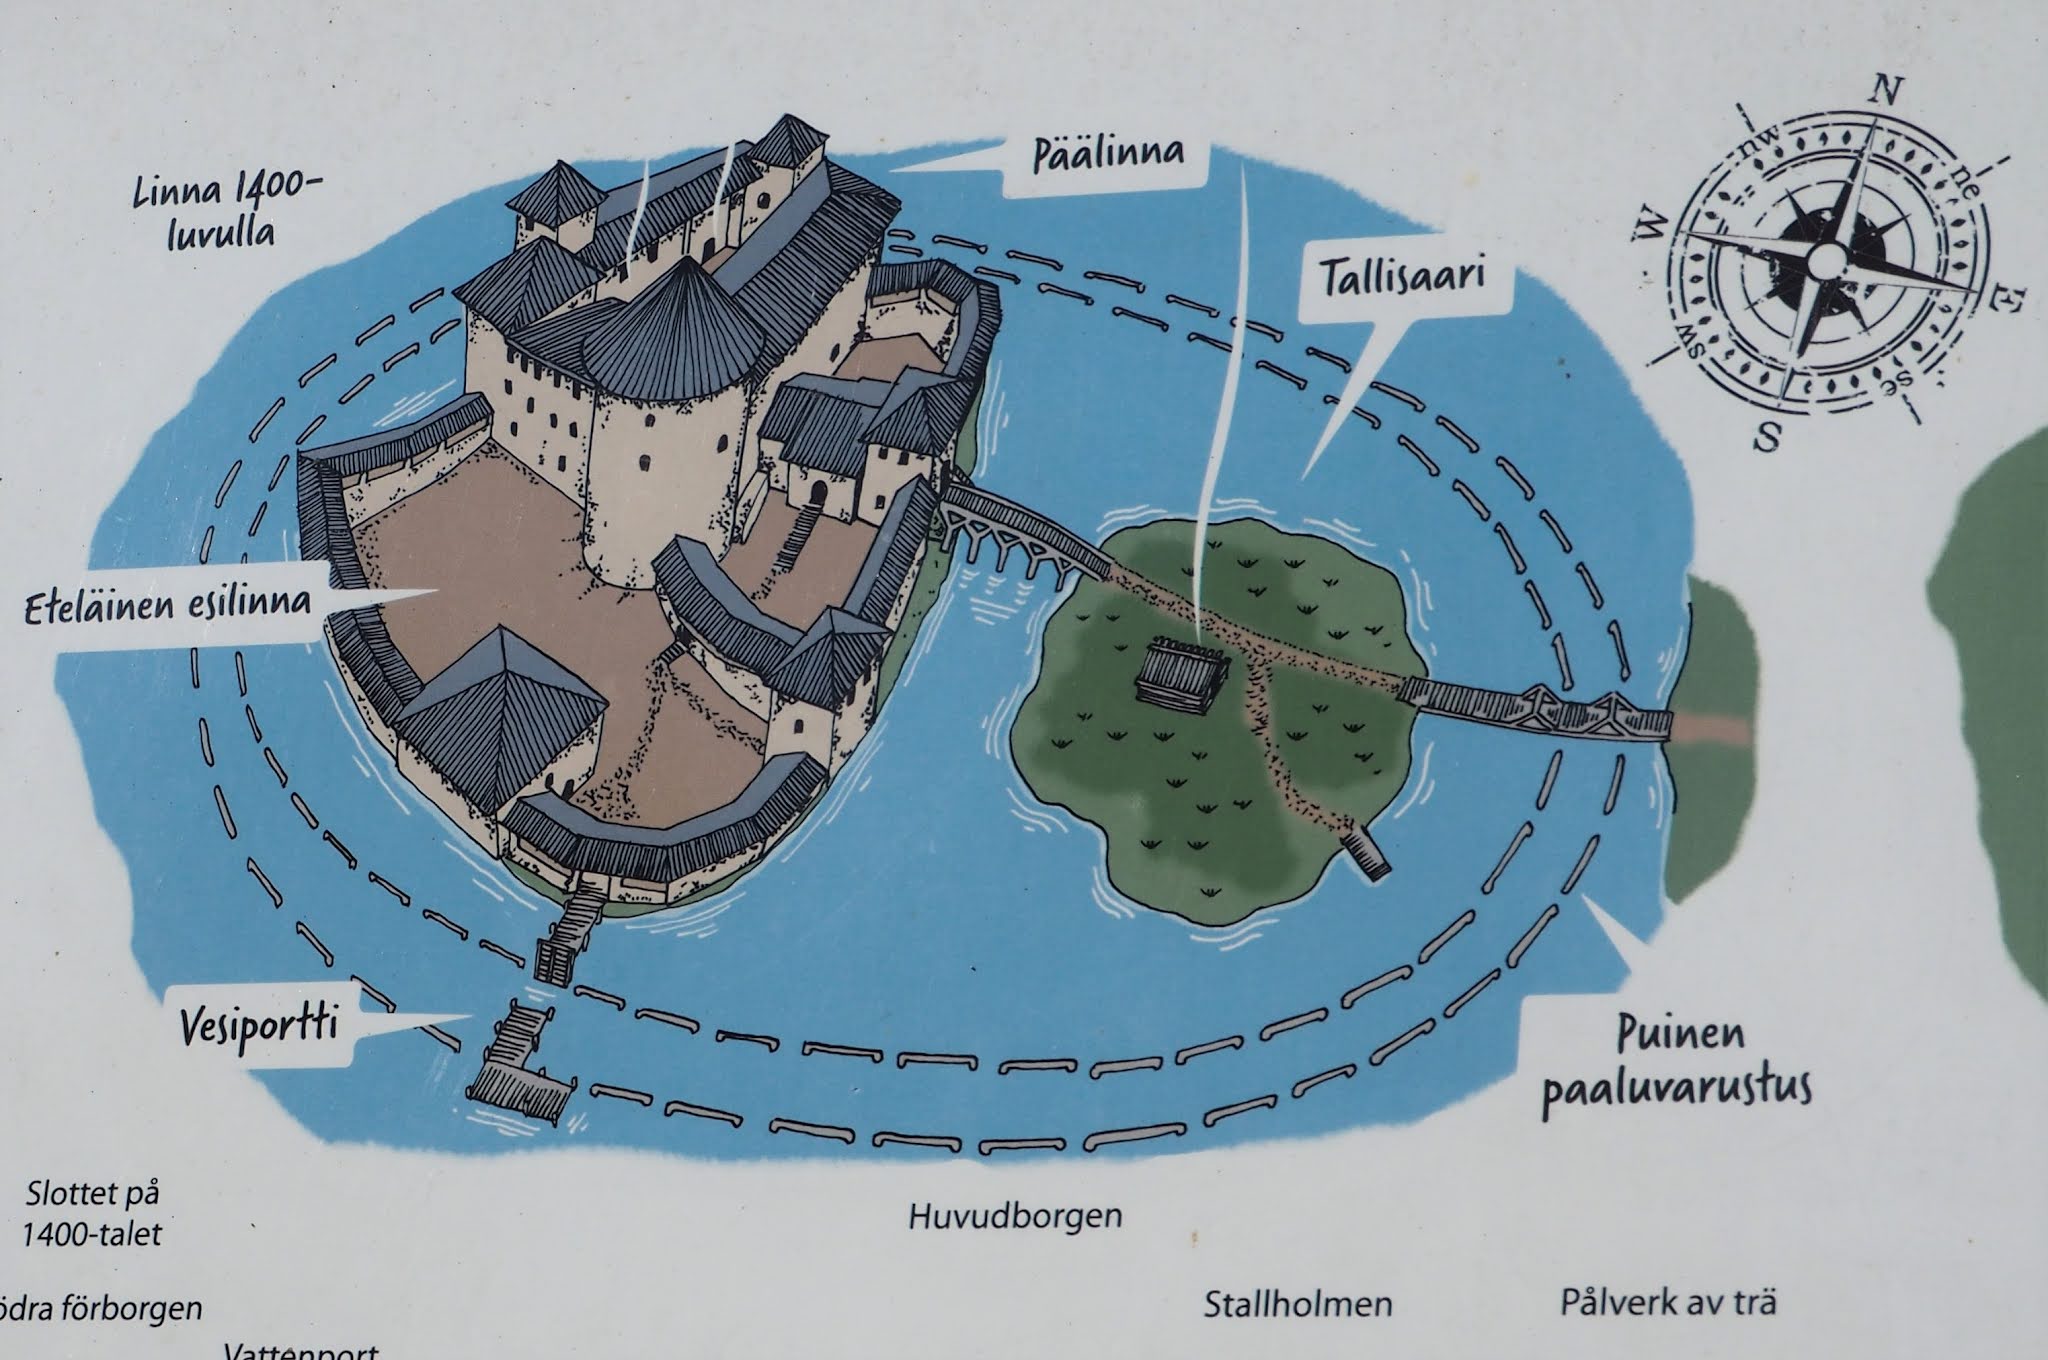 Raaseporin linna, Uudenmaan hallinnollinen keskus 1300-luvulta